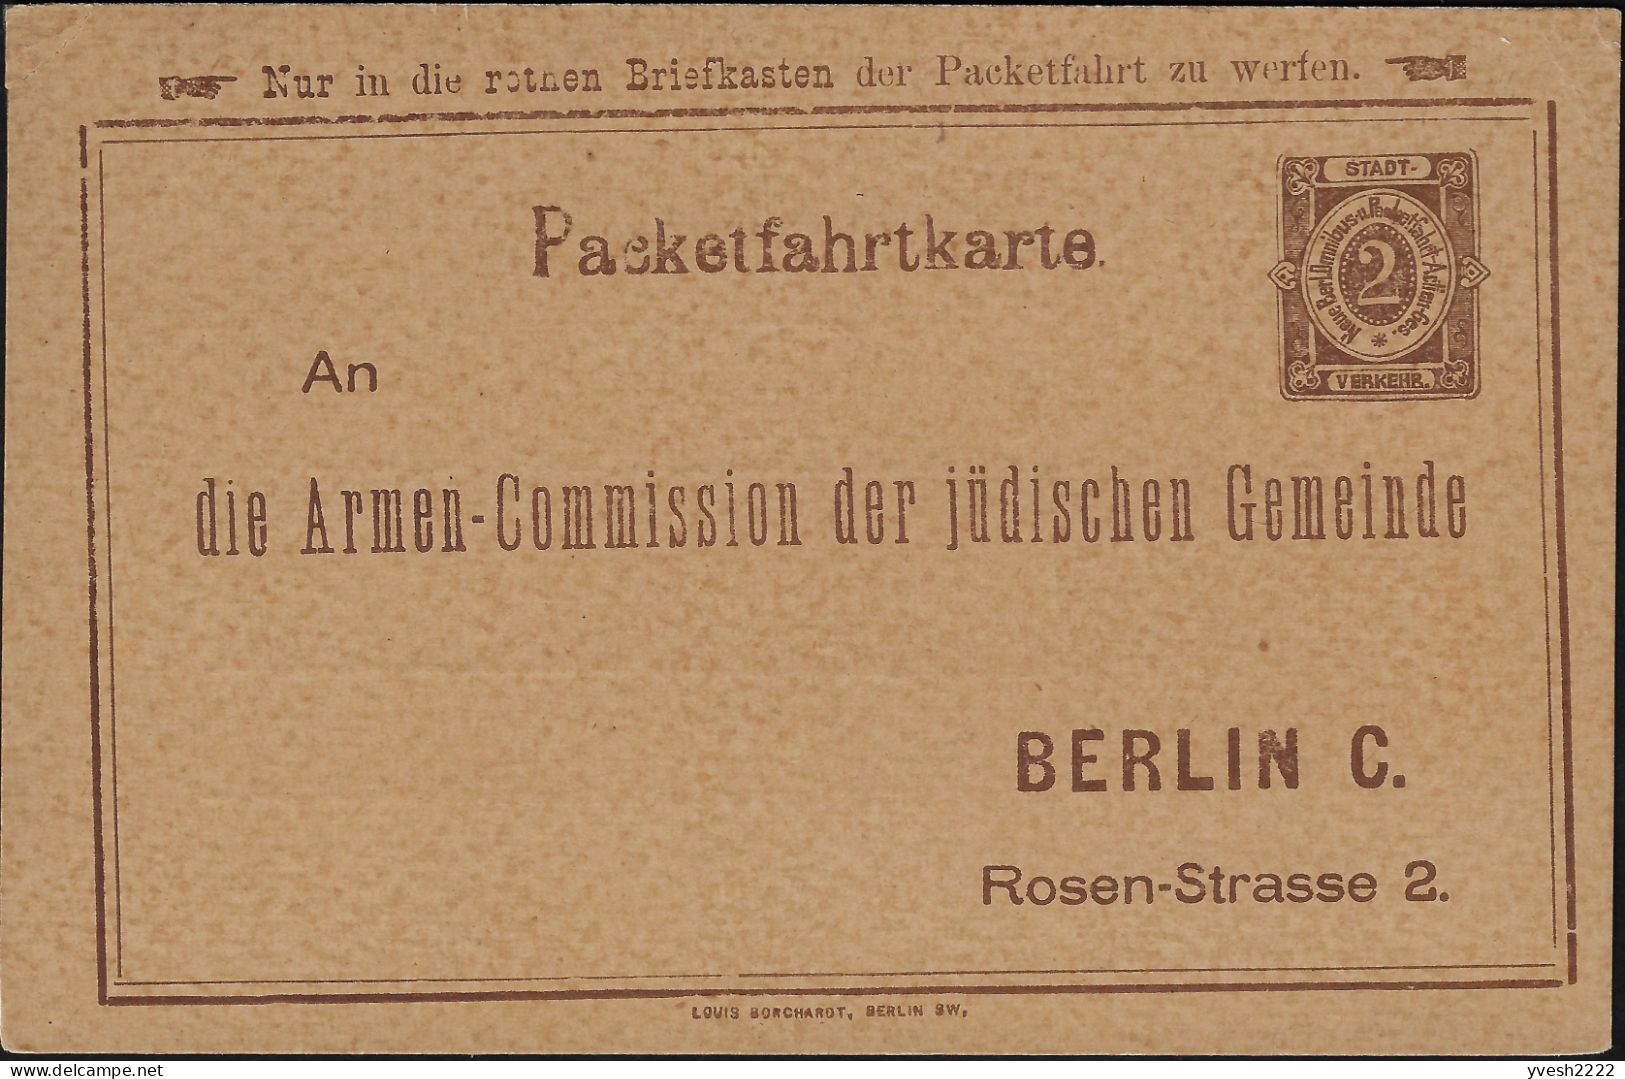 Berlin 1886 1888, 1897. 3 Entiers Postaux Poste Privée. Collecte De Fonds Pour Les Pauvres De La Communauté Juive Locale - Jewish